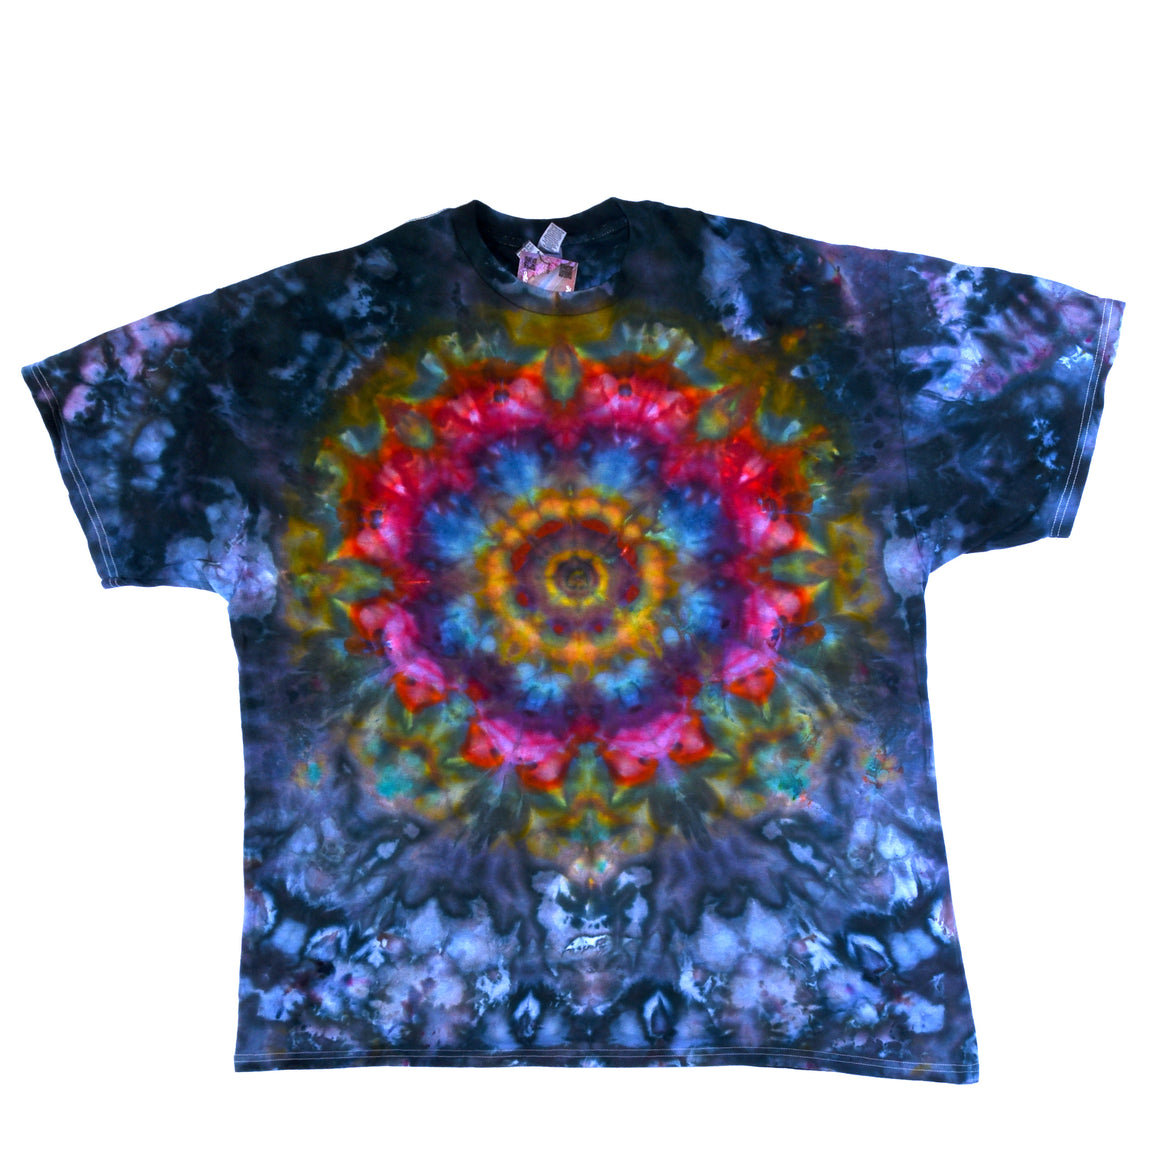 XXL Tie Dye T-Shirt - Charcoal w/ Rainbow Psychedelic Flower